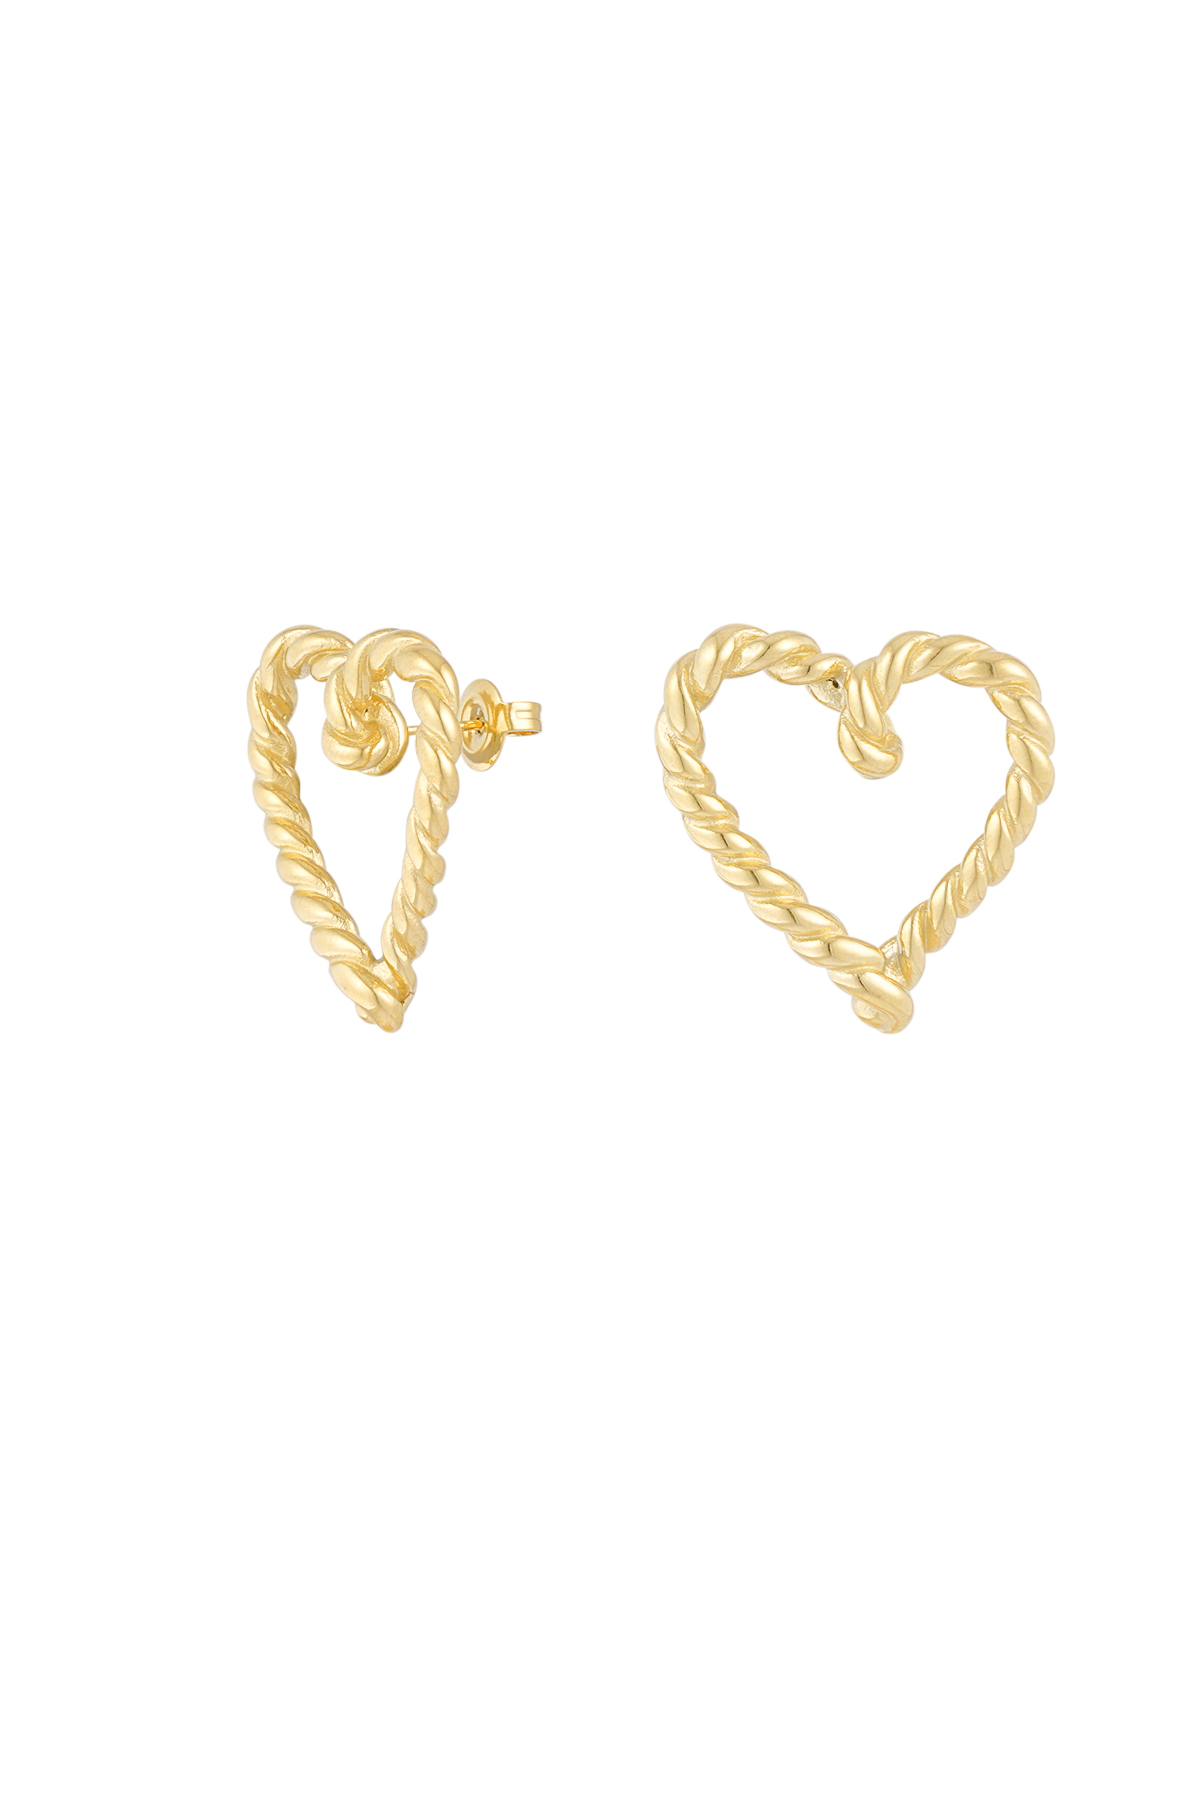 Twisted heart earrings - gold